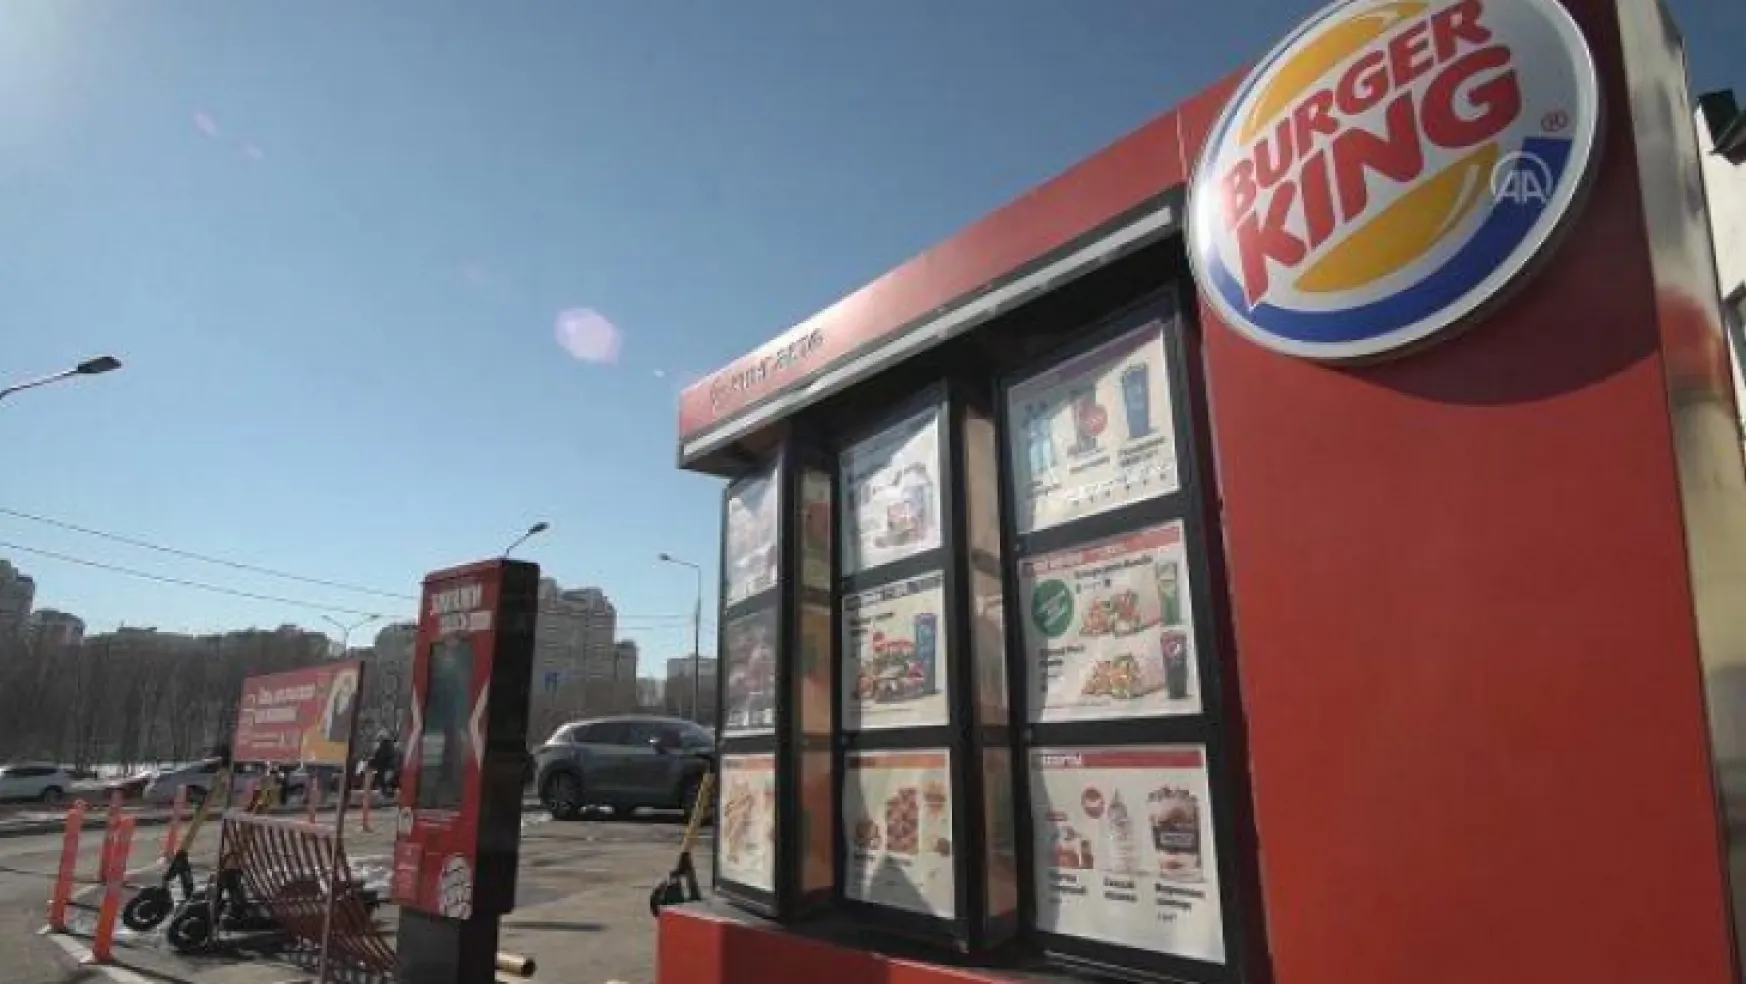 ABD'li fast-food devi Burger King şaşırttı: Rusya'daki restoranlarımızı kapatamıyoruz